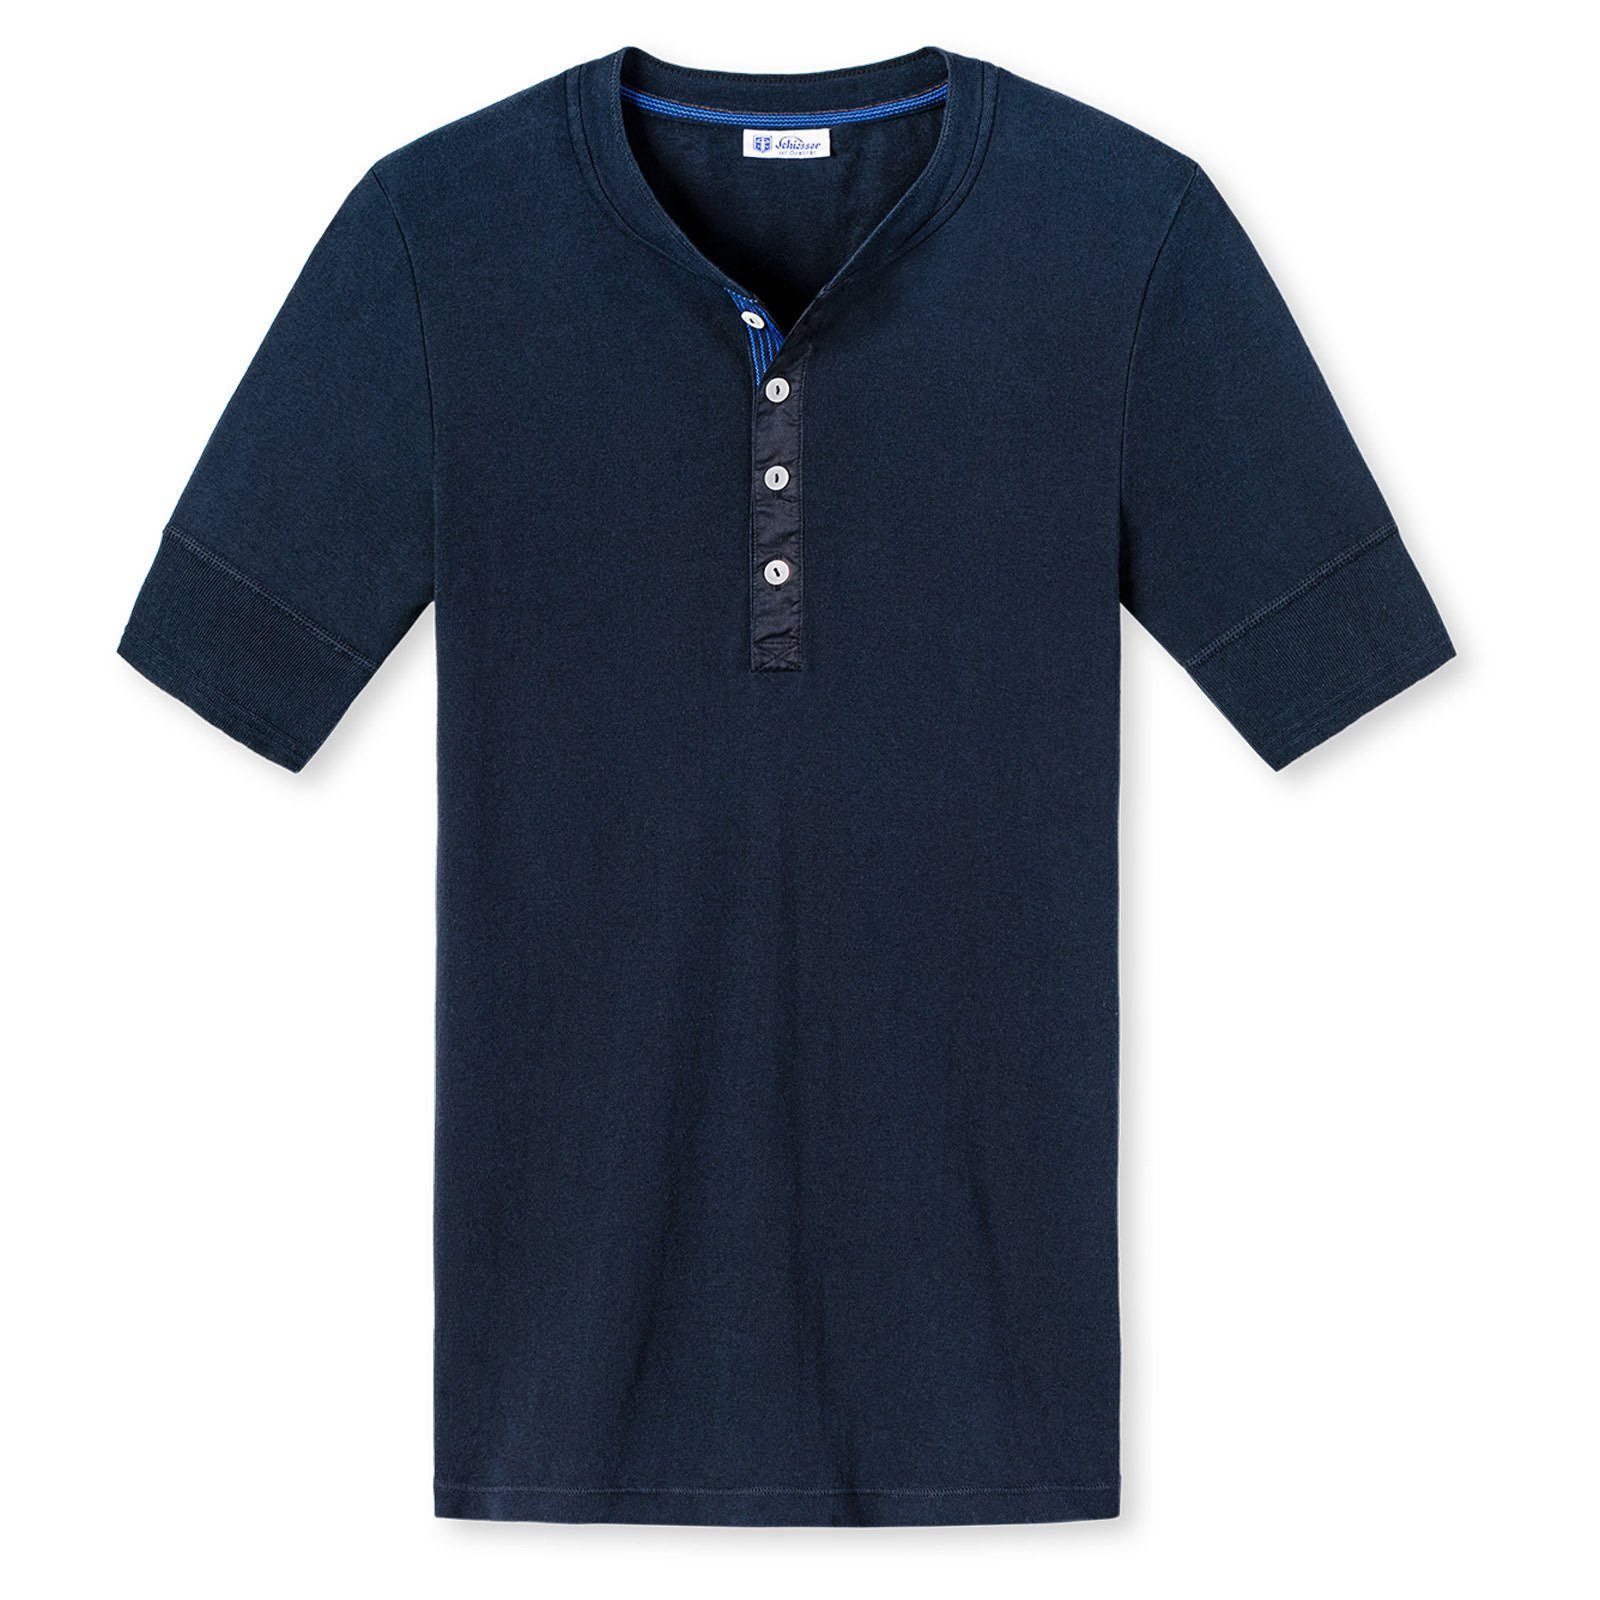 SCHIESSER REVIVAL Unterhemd »Herren Shirt, 1/2 Arm, Kurzarm Unterhemd,  Karl« online kaufen | OTTO